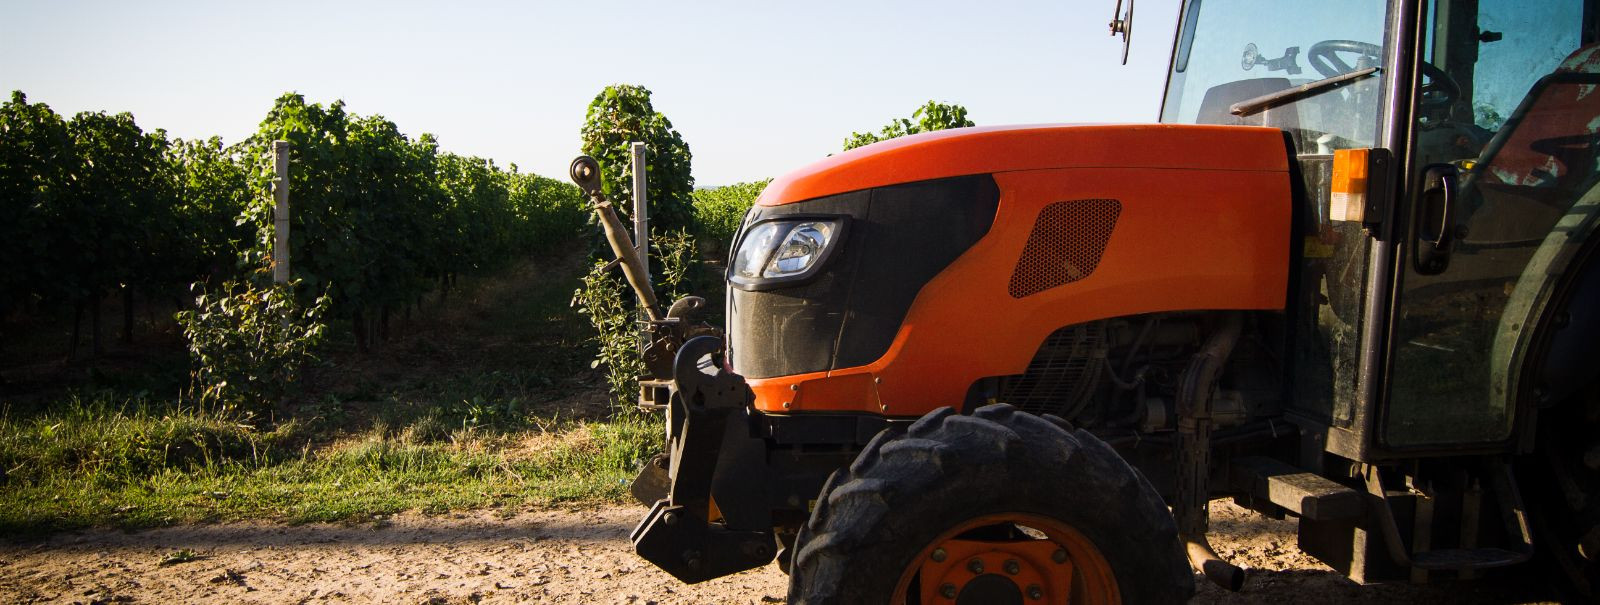 Põllumajandusprofessionaalidele ja ehitusettevõtetele on traktor enam kui lihtsalt masin; see on nende tegevuse selgroog. Äratundmine, millal on aeg uuendada, v